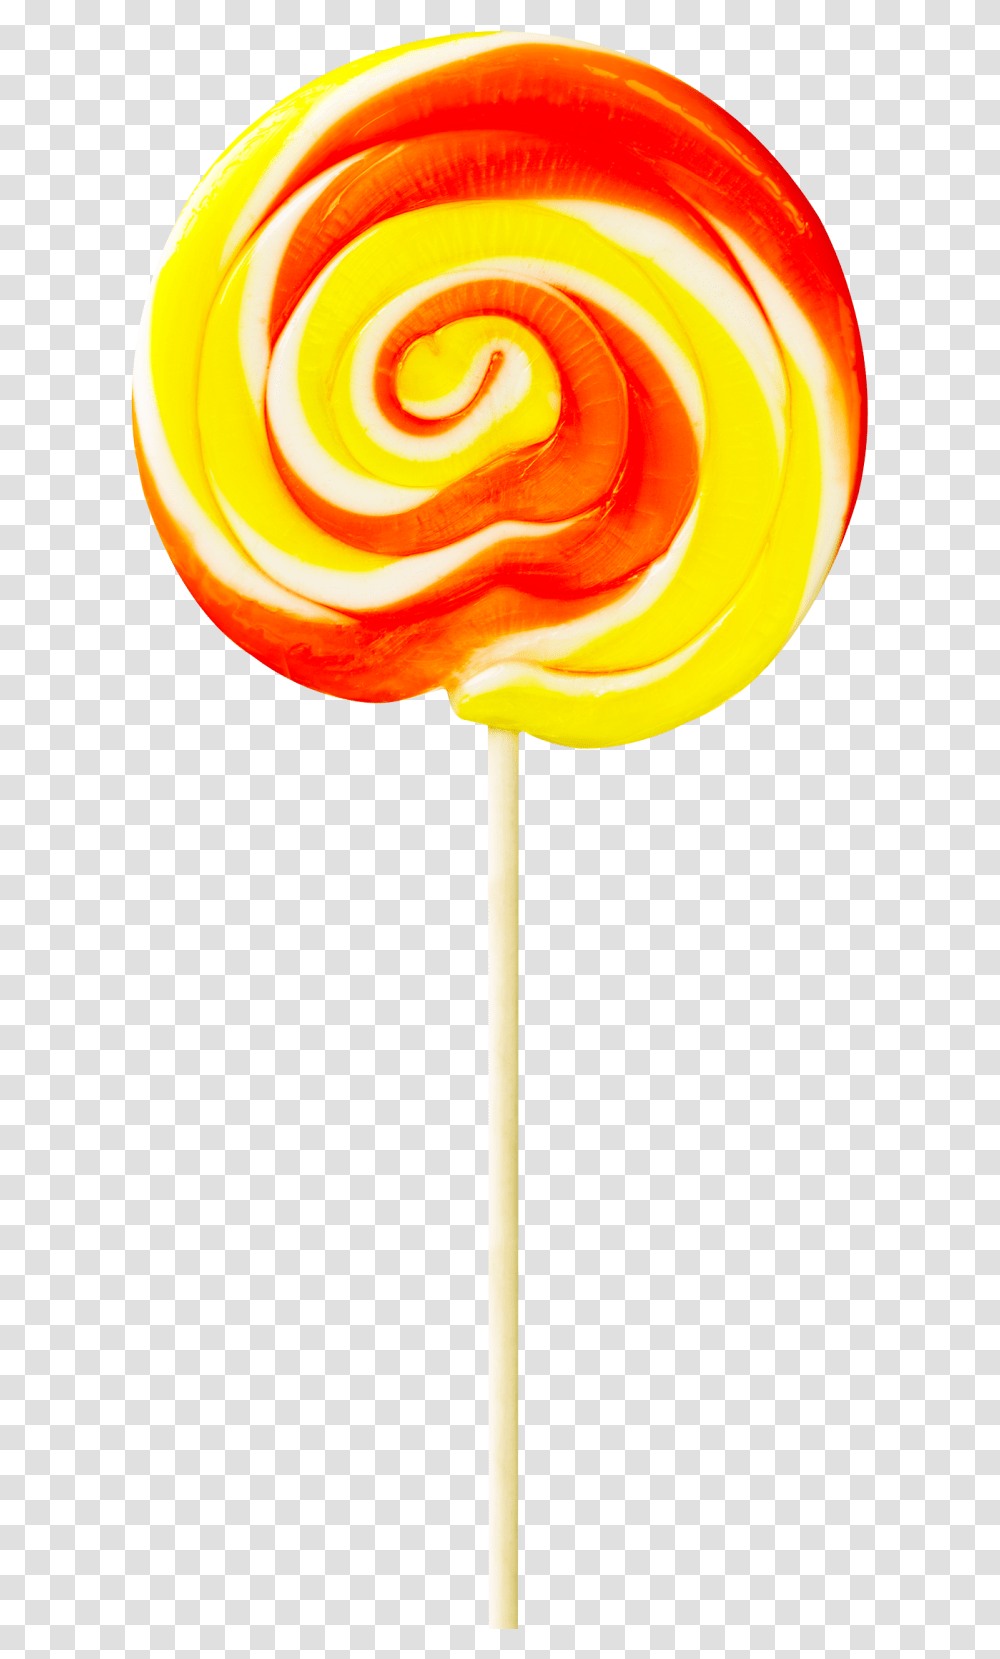 Lollipop Image Permen Lollipop, Food, Candy, Sweets, Confectionery Transparent Png